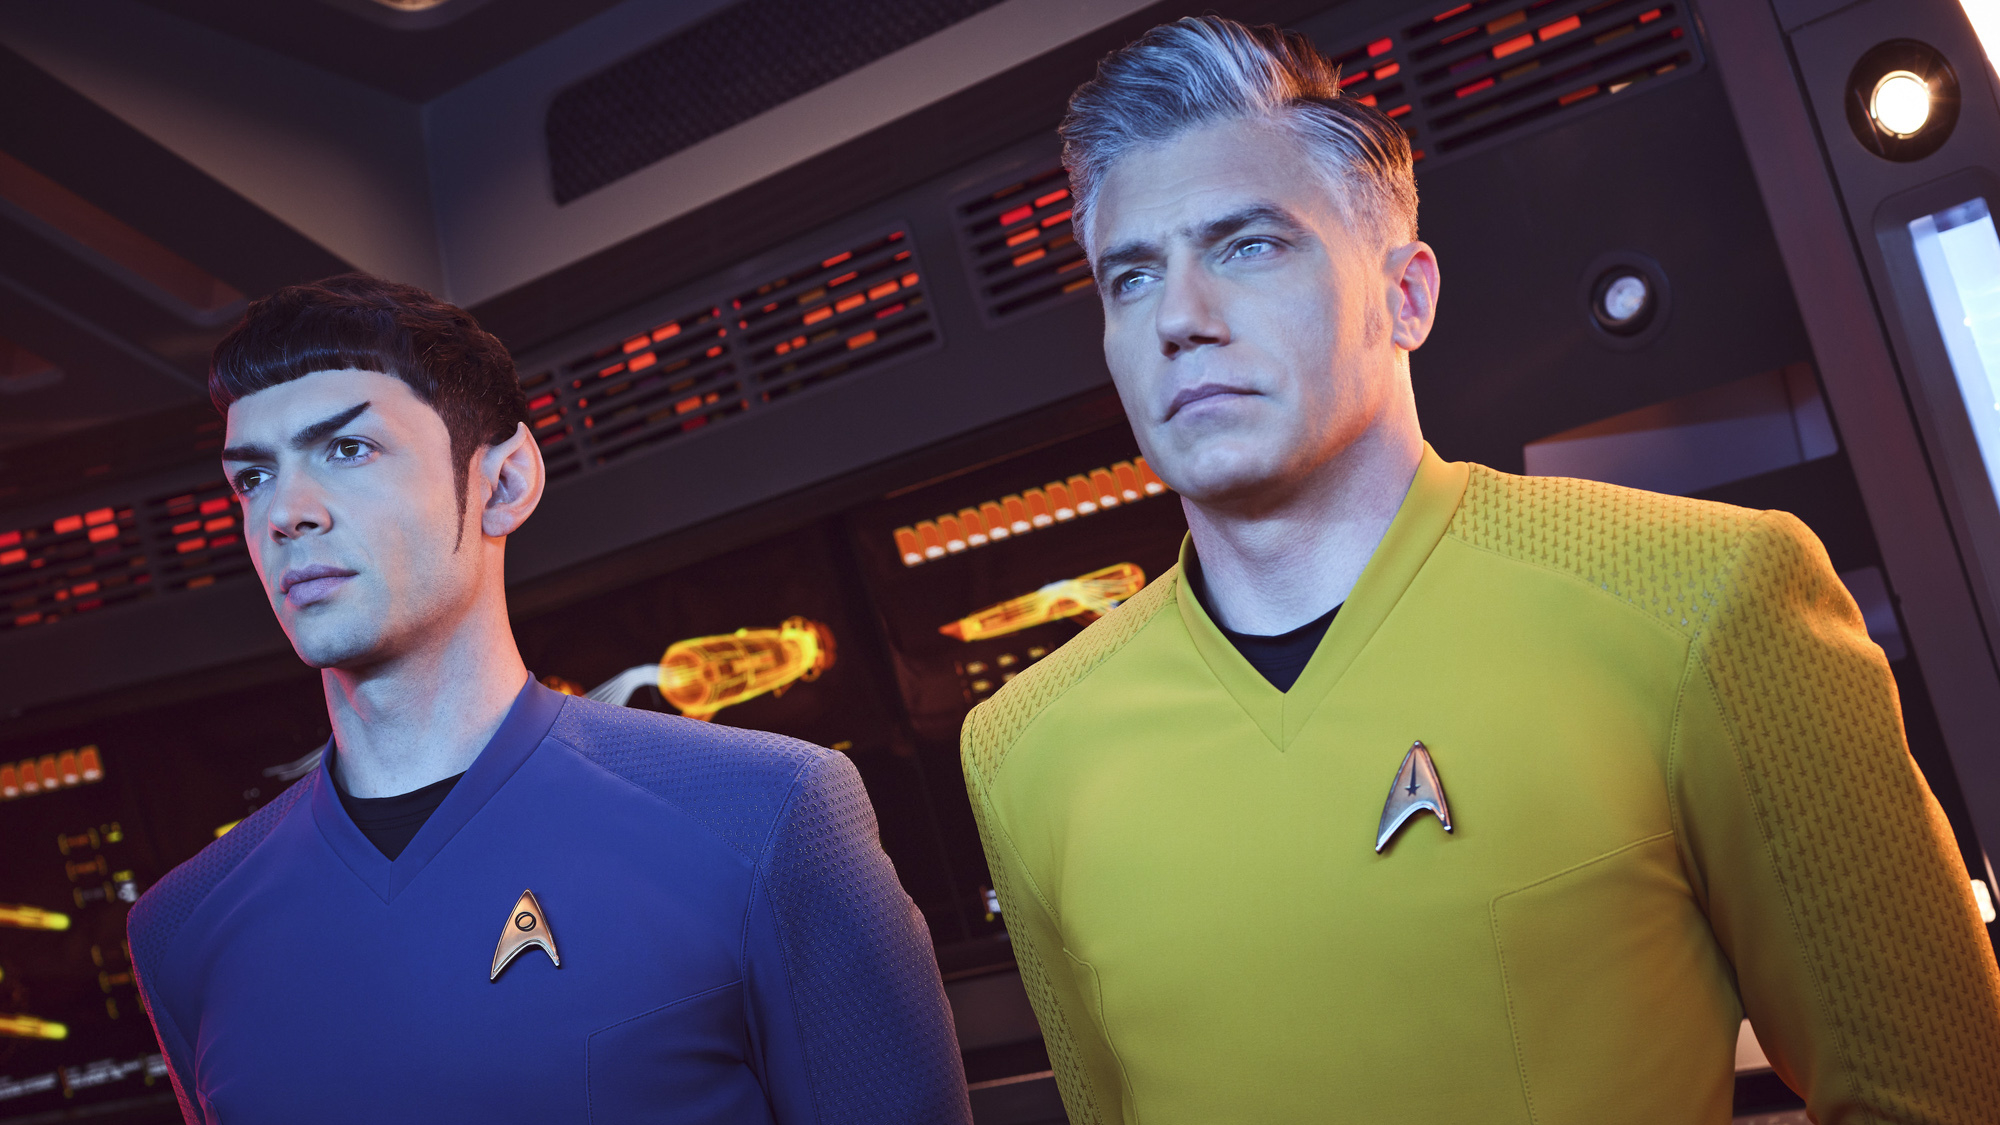 La franquicia de Star Trek sólo estará disponible en un servicio de streaming en Estados Unidos a partir de ahora.